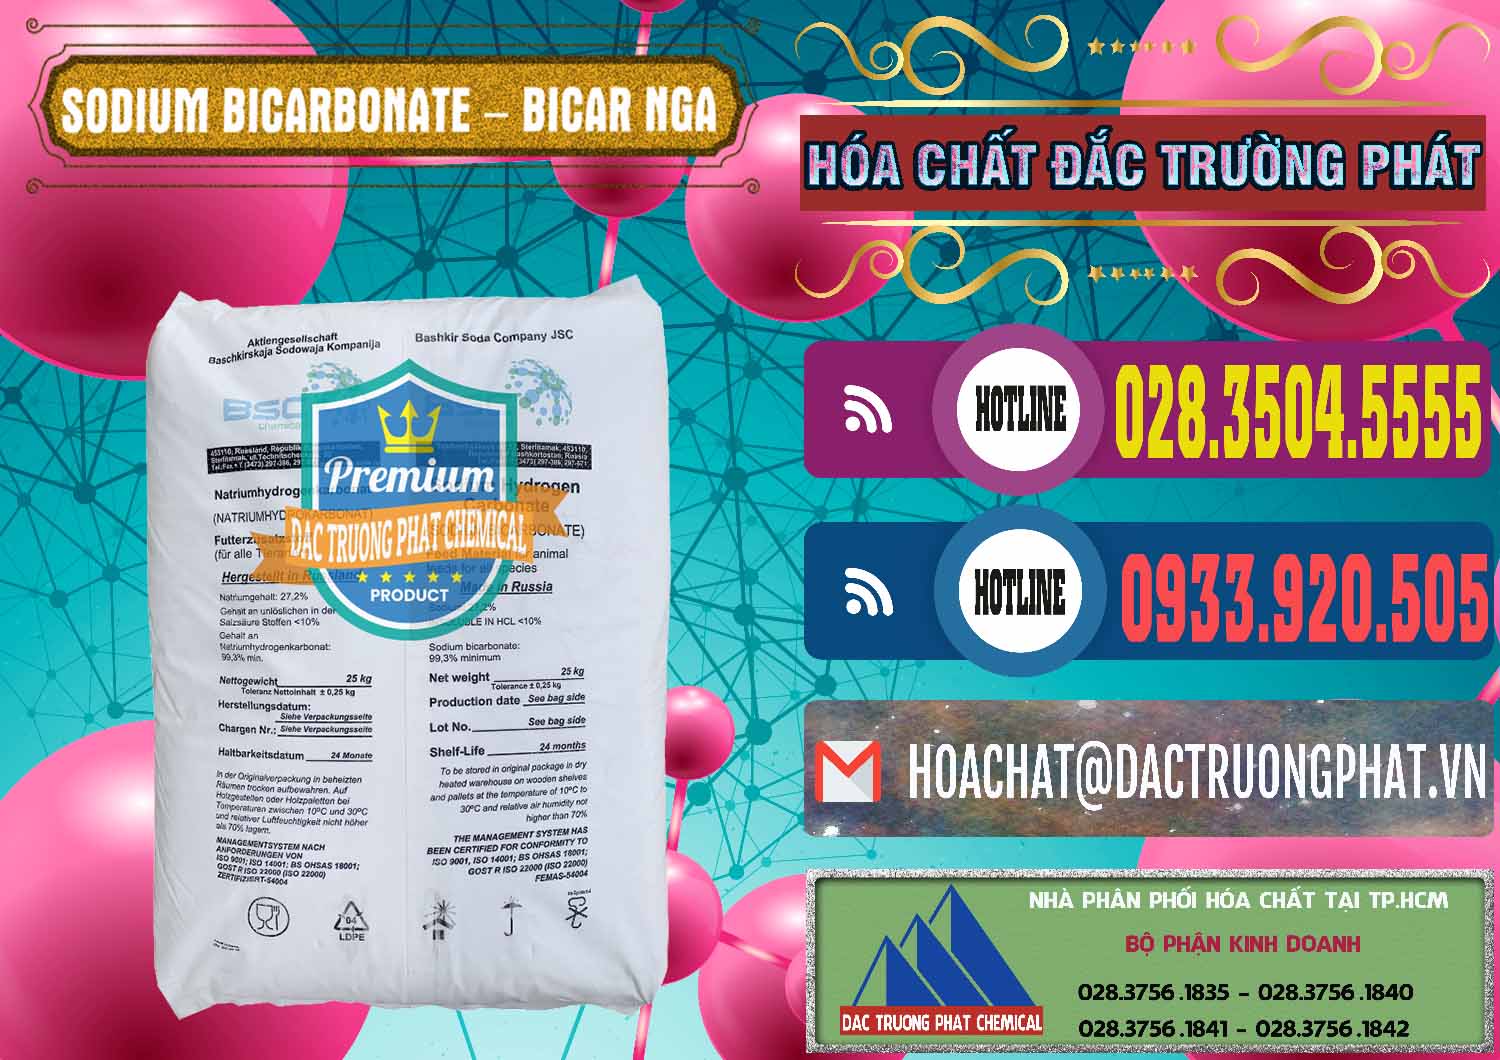 Cty bán ( phân phối ) Sodium Bicarbonate – Bicar NaHCO3 Nga Russia - 0425 - Công ty phân phối & cung cấp hóa chất tại TP.HCM - muabanhoachat.com.vn